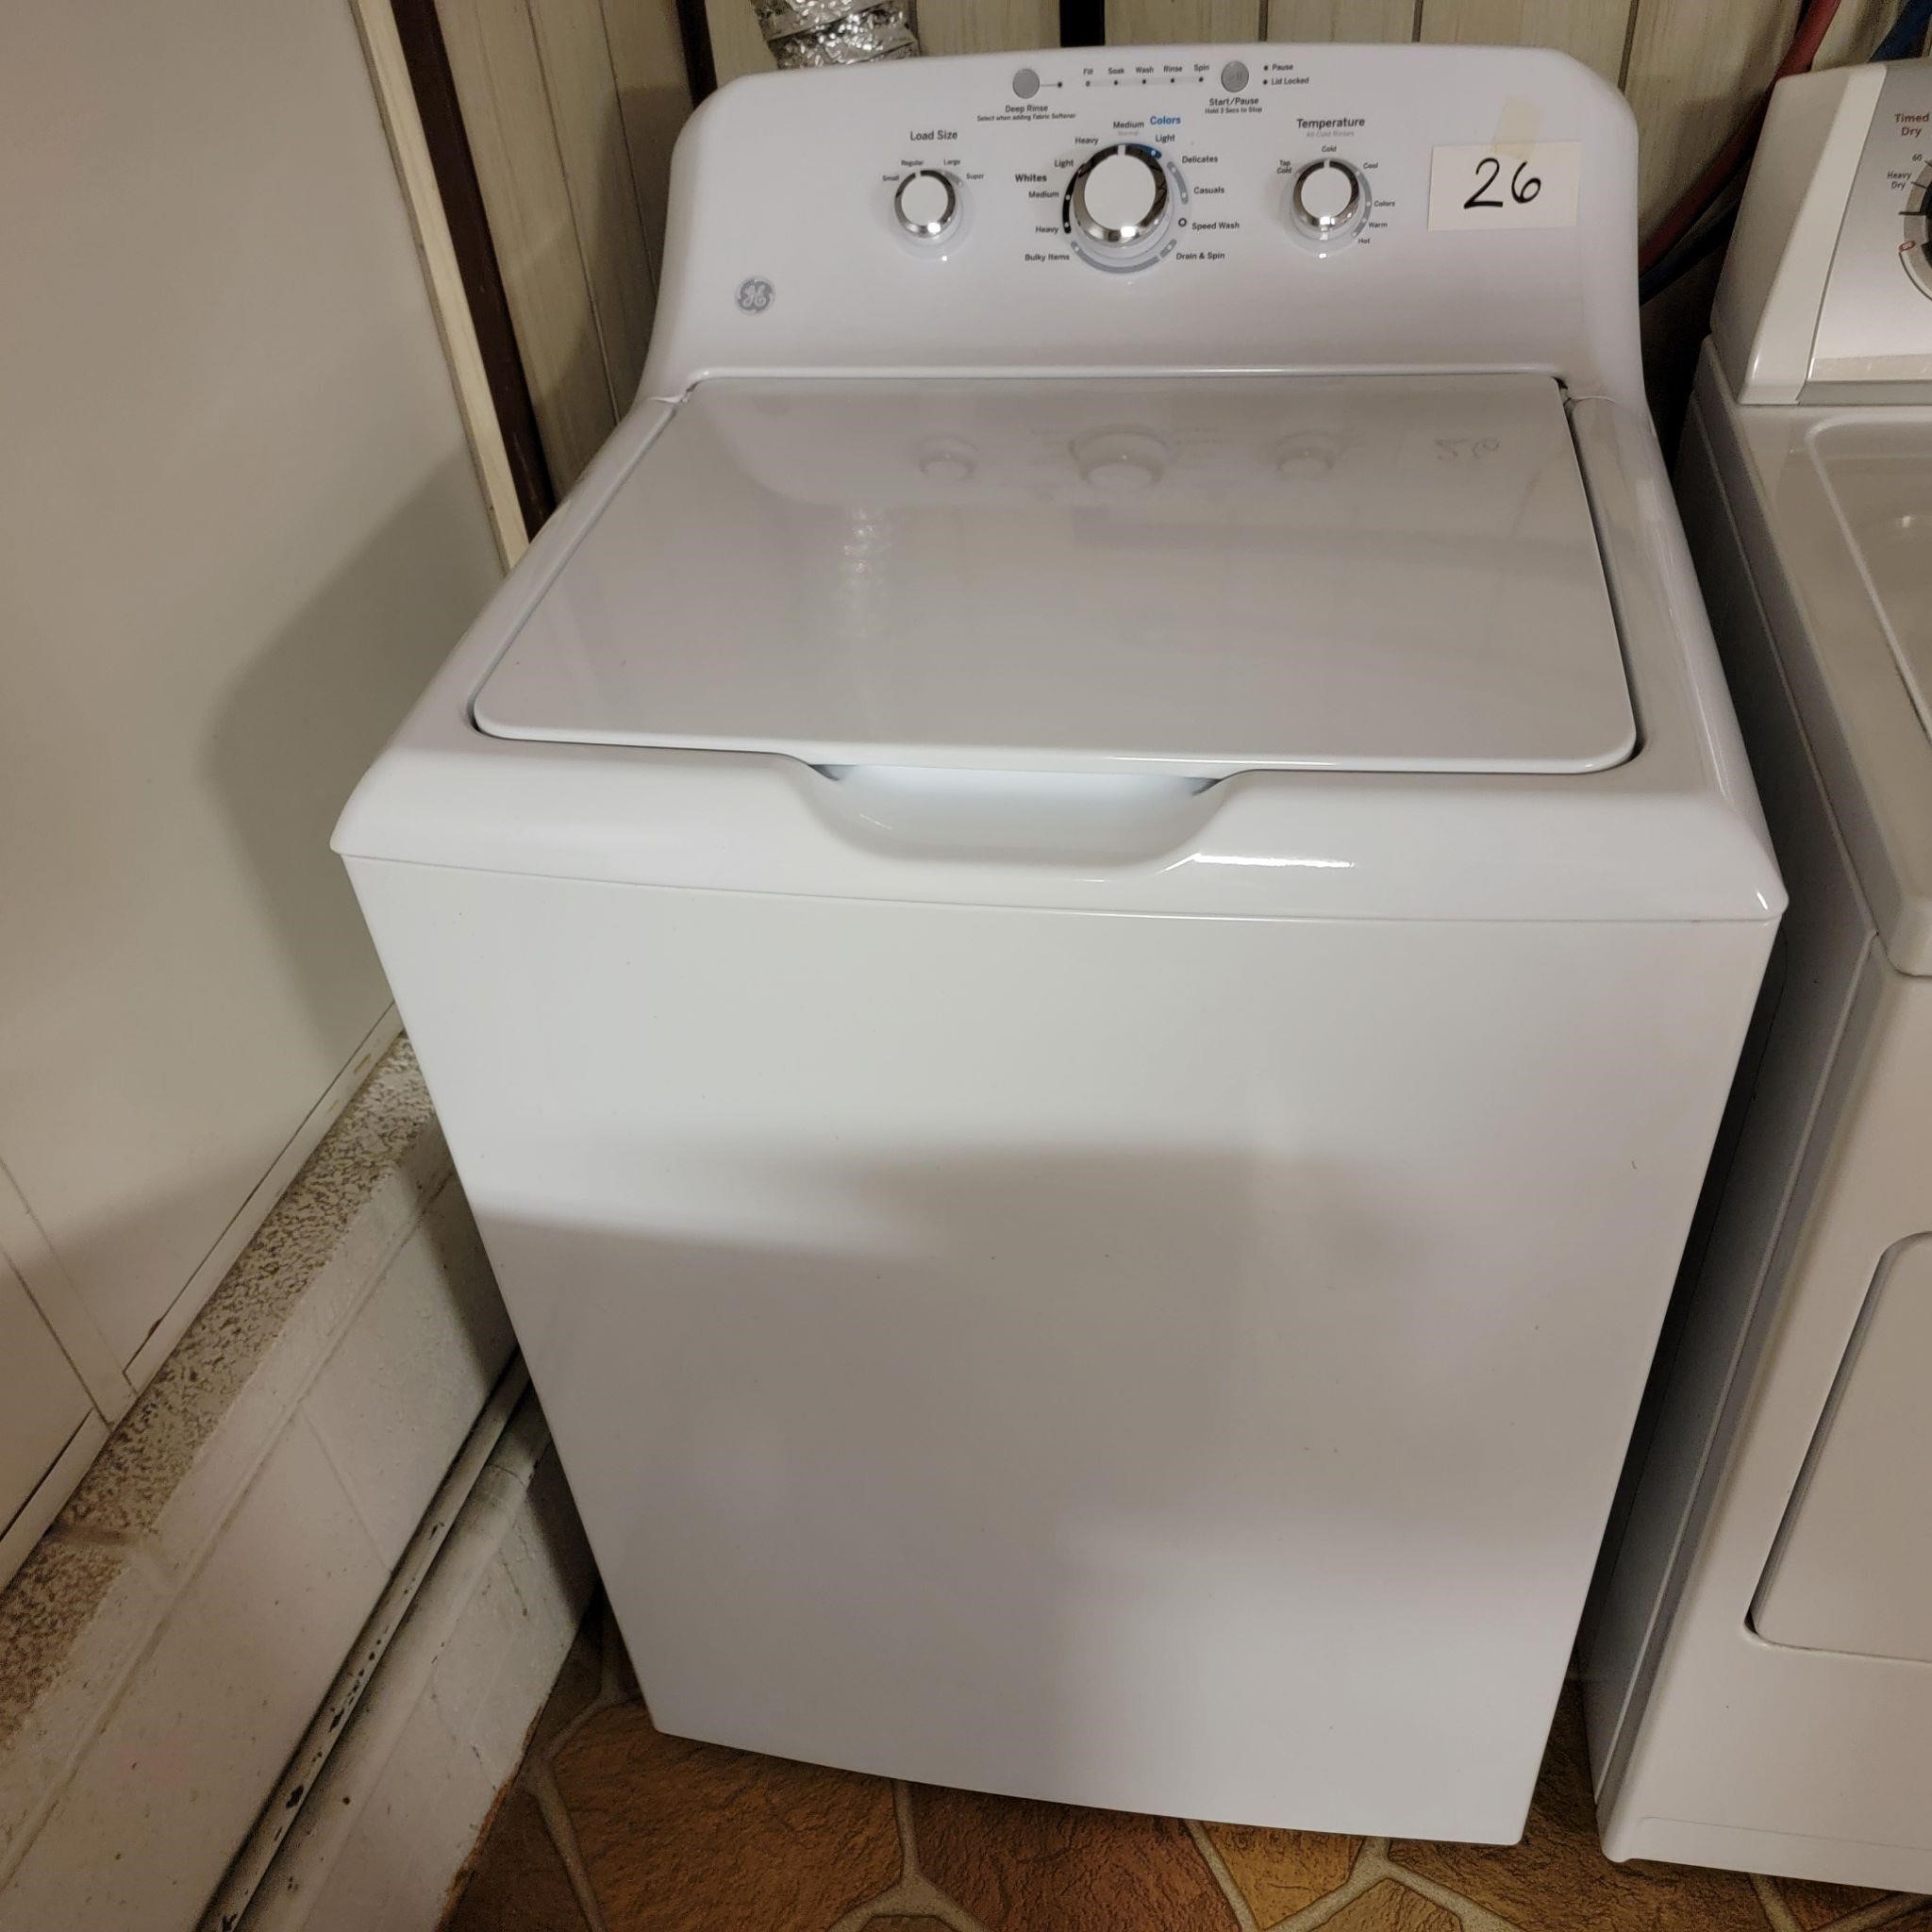 GE Top Load Washing Machine